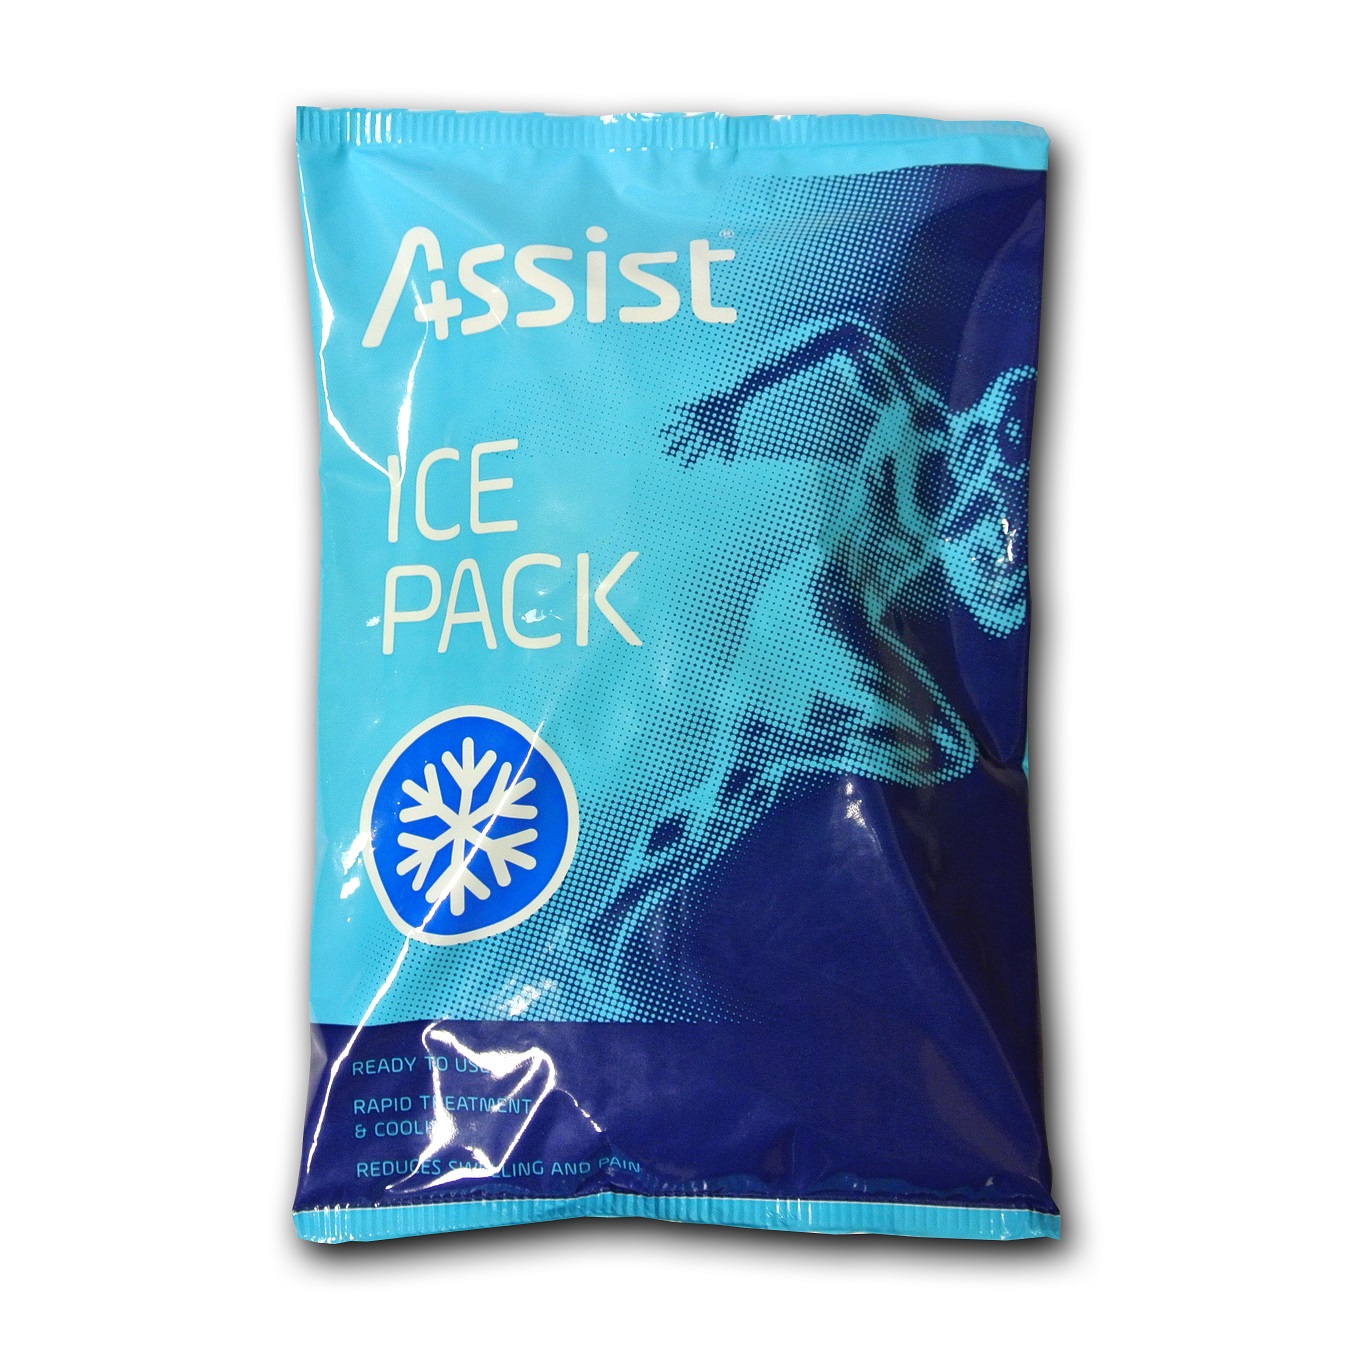 ASSIST IcePack kertakäyttö kylmäpussi pikaiseen kivunlievitykseen!